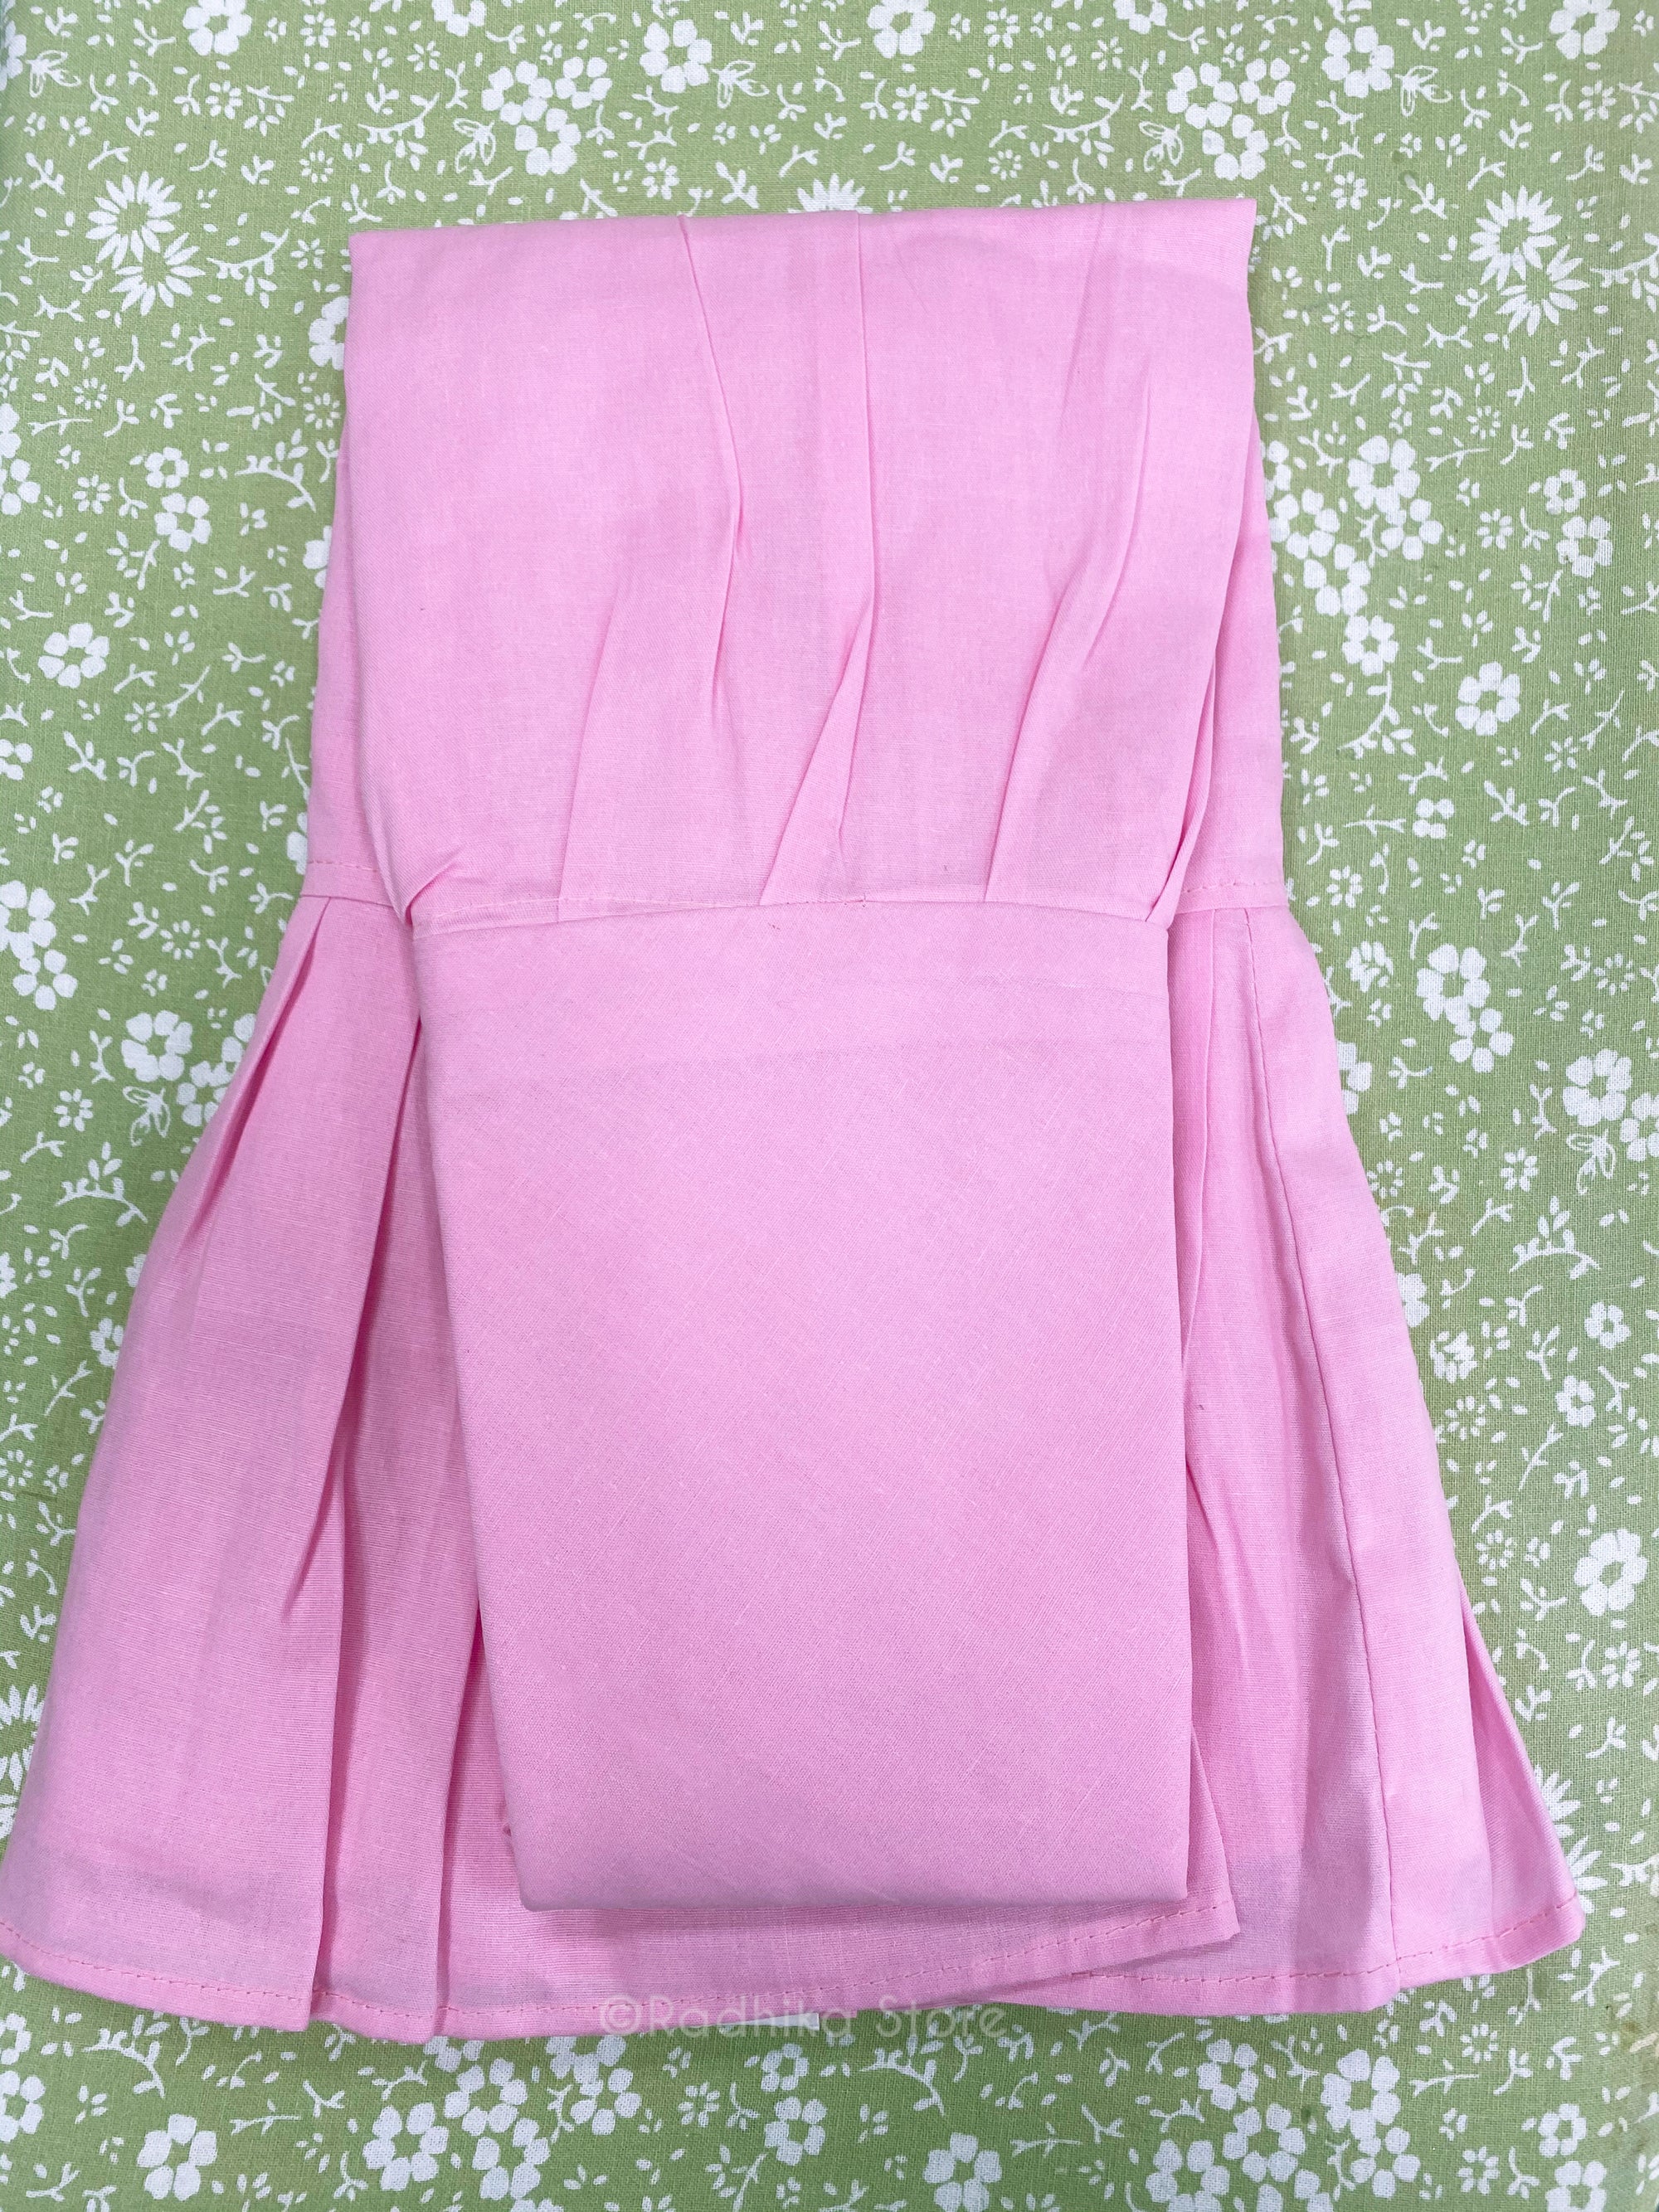 Pink Petticoat/Slip - S, M, L, Xl